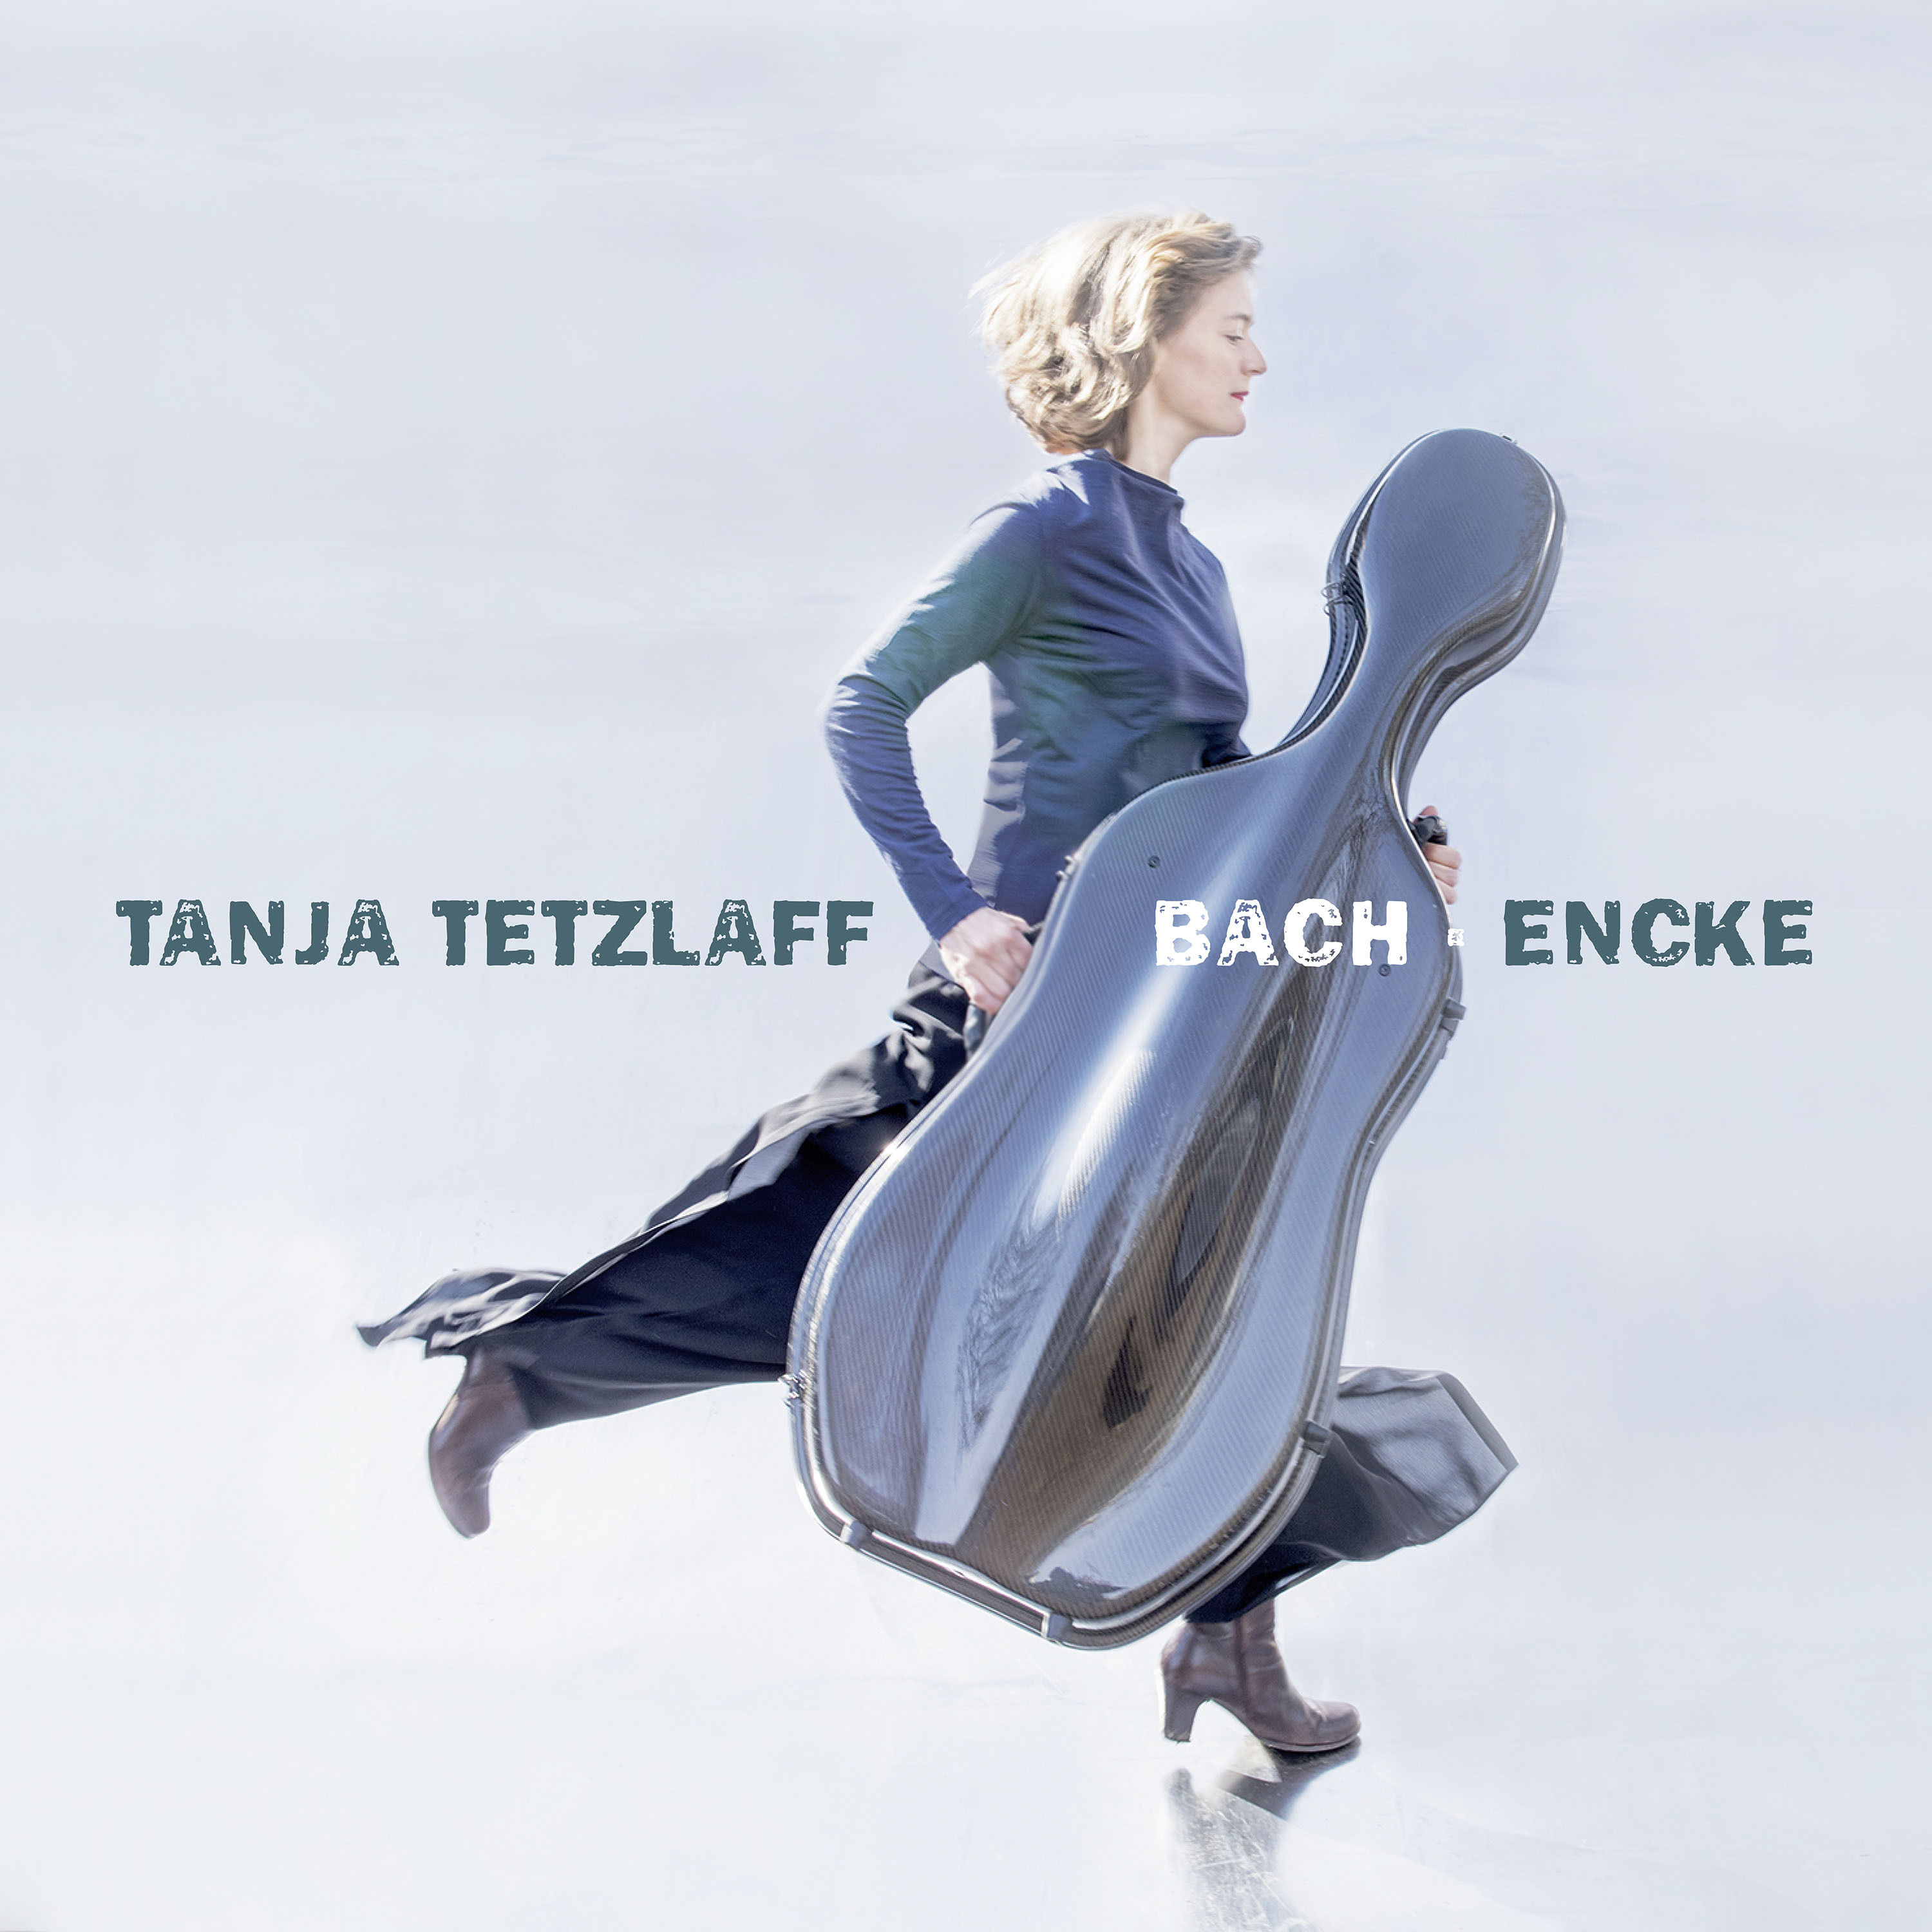 Tanja Tetzlaff - Tanja Tetzlaff Plays Bach & Encke (2019) [FLAC 24bit/96kHz]